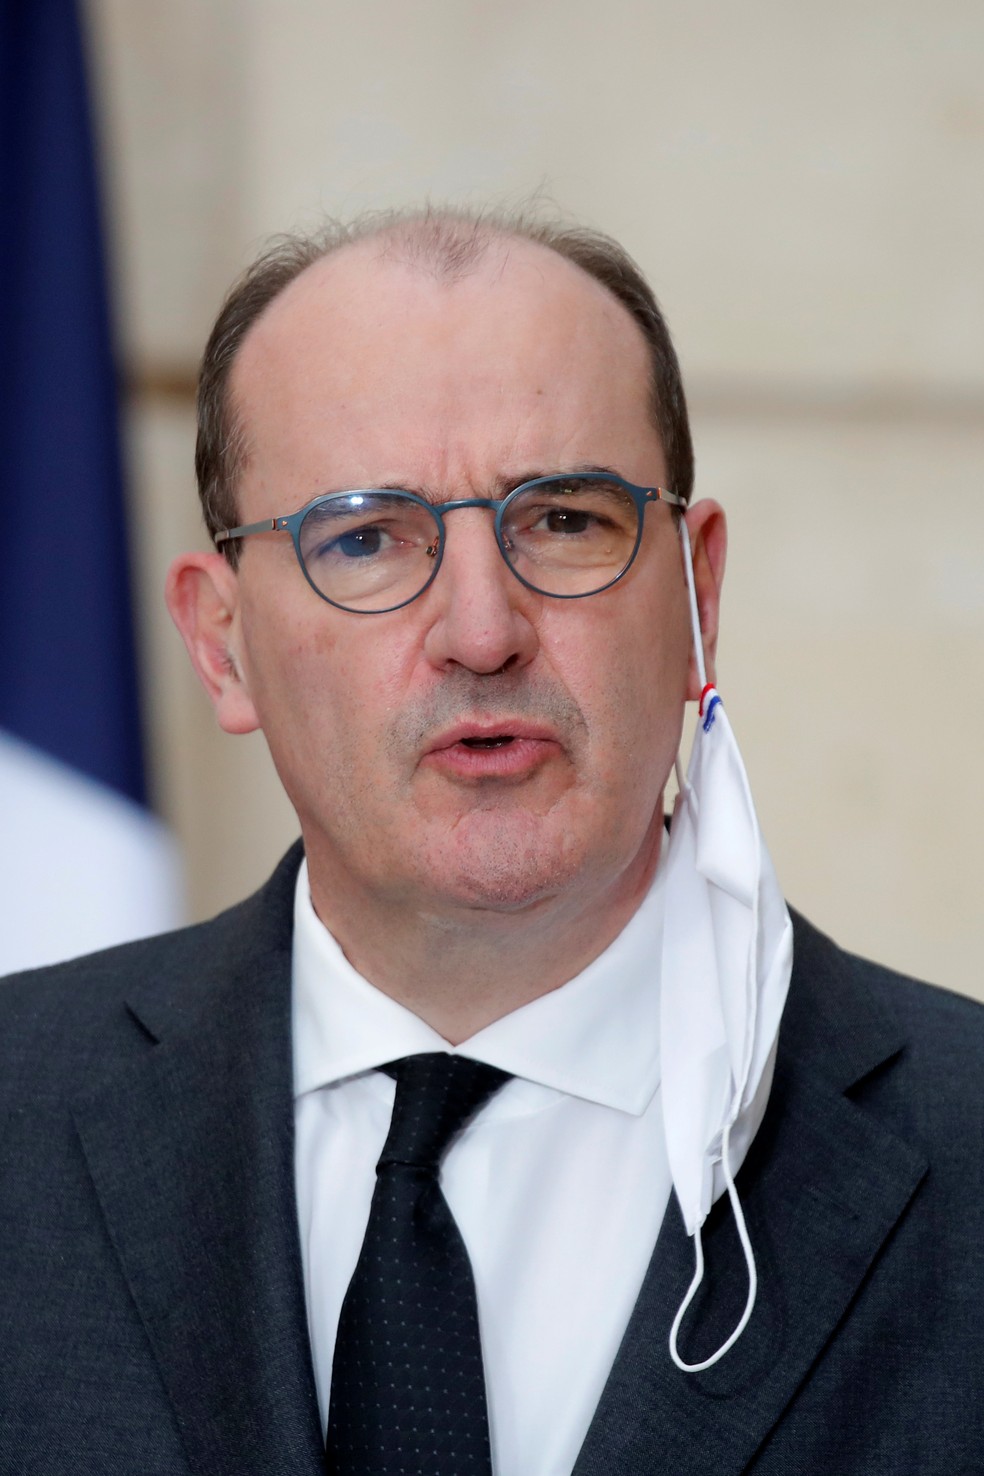 Jean Castex, primeiro-ministro da França, fala em coletiva de imprensa nesta quarta-feira (9) no Palácio do Eliseu — Foto: Charles Platiau/Pool/AFP